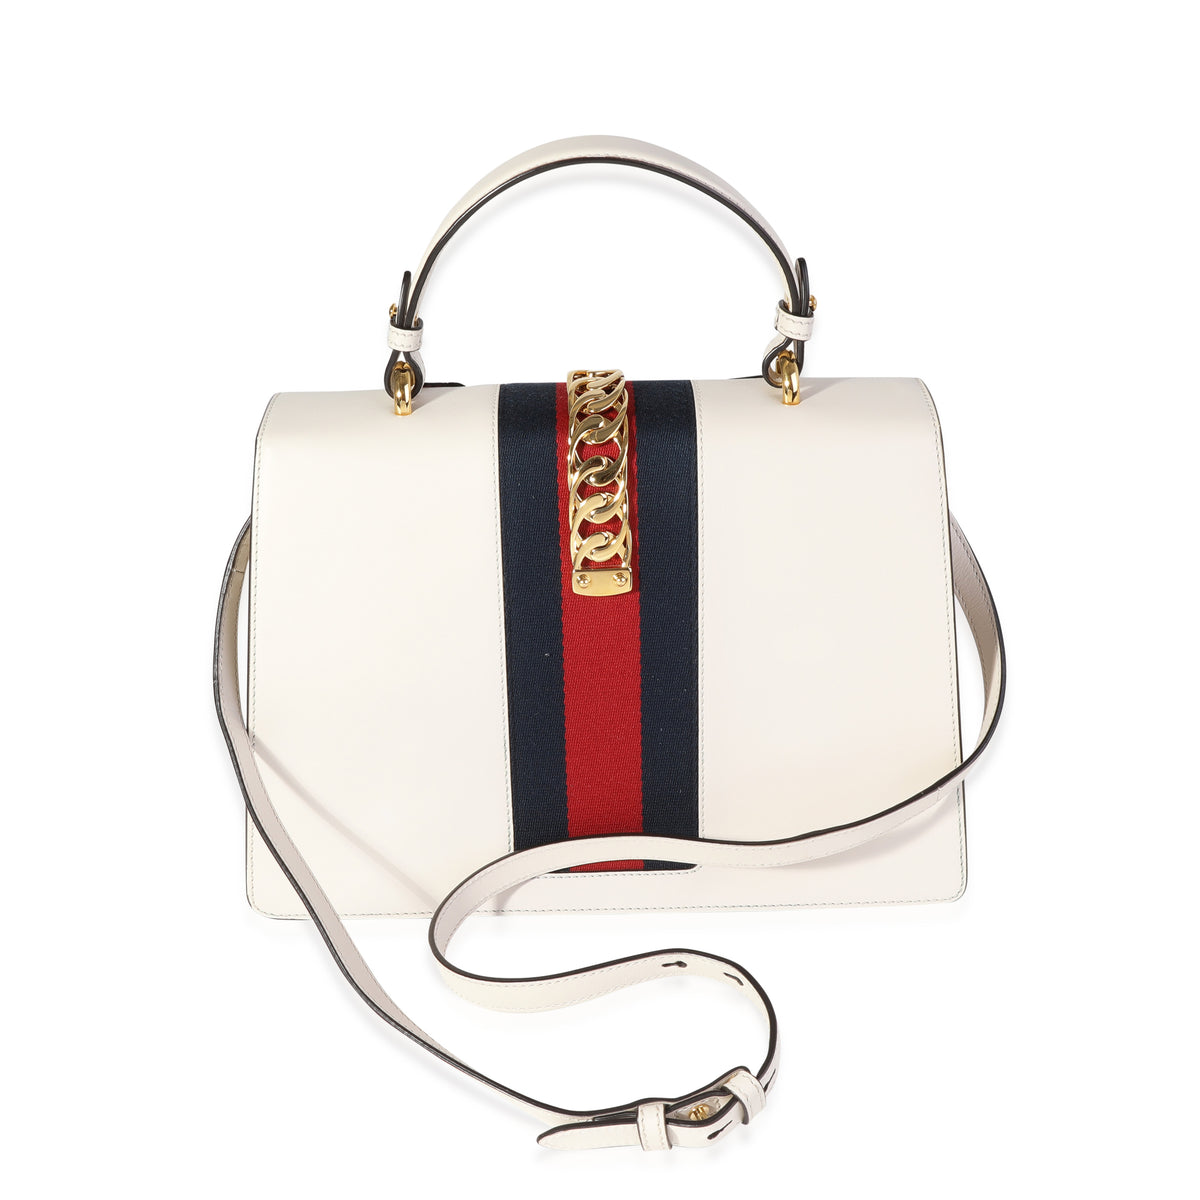 Gucci Cream & Multicolor Floral Embroidery Medium Sylvie Top Handle Bag